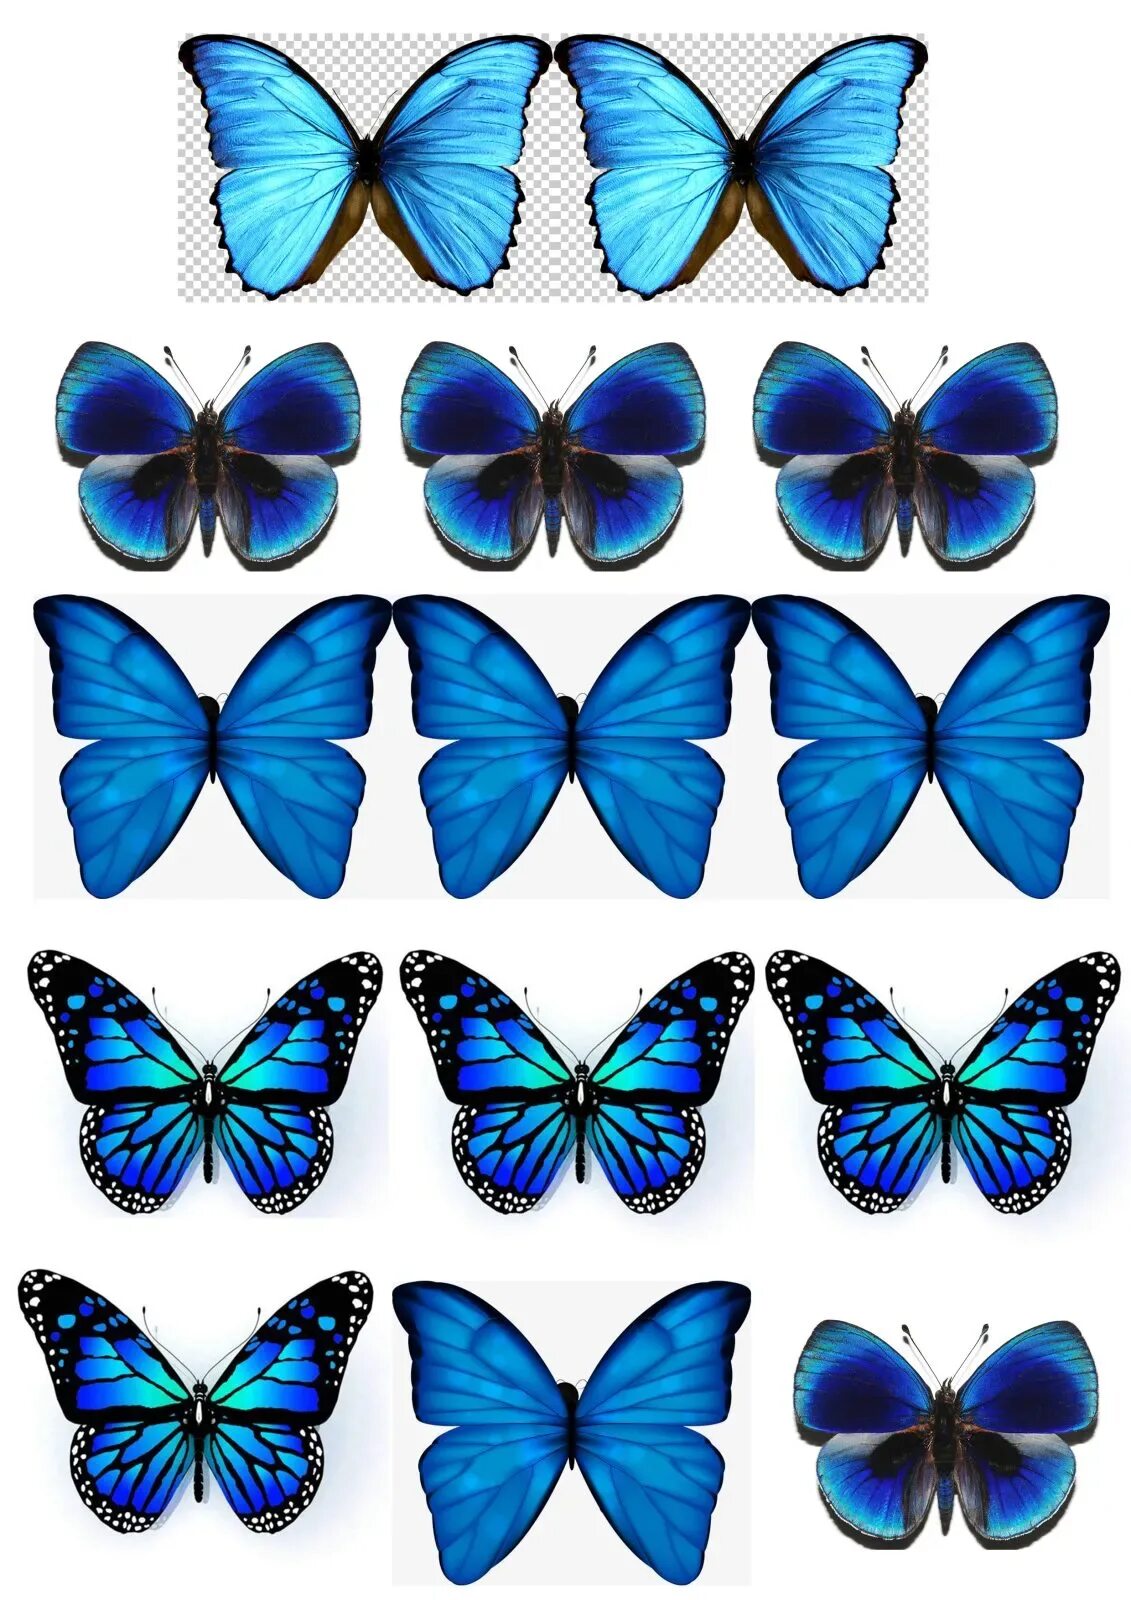 Синие картинки распечатать. Голубая бабочка. Бабочки цветные. Бабочки для печати. Синяя бабочка.